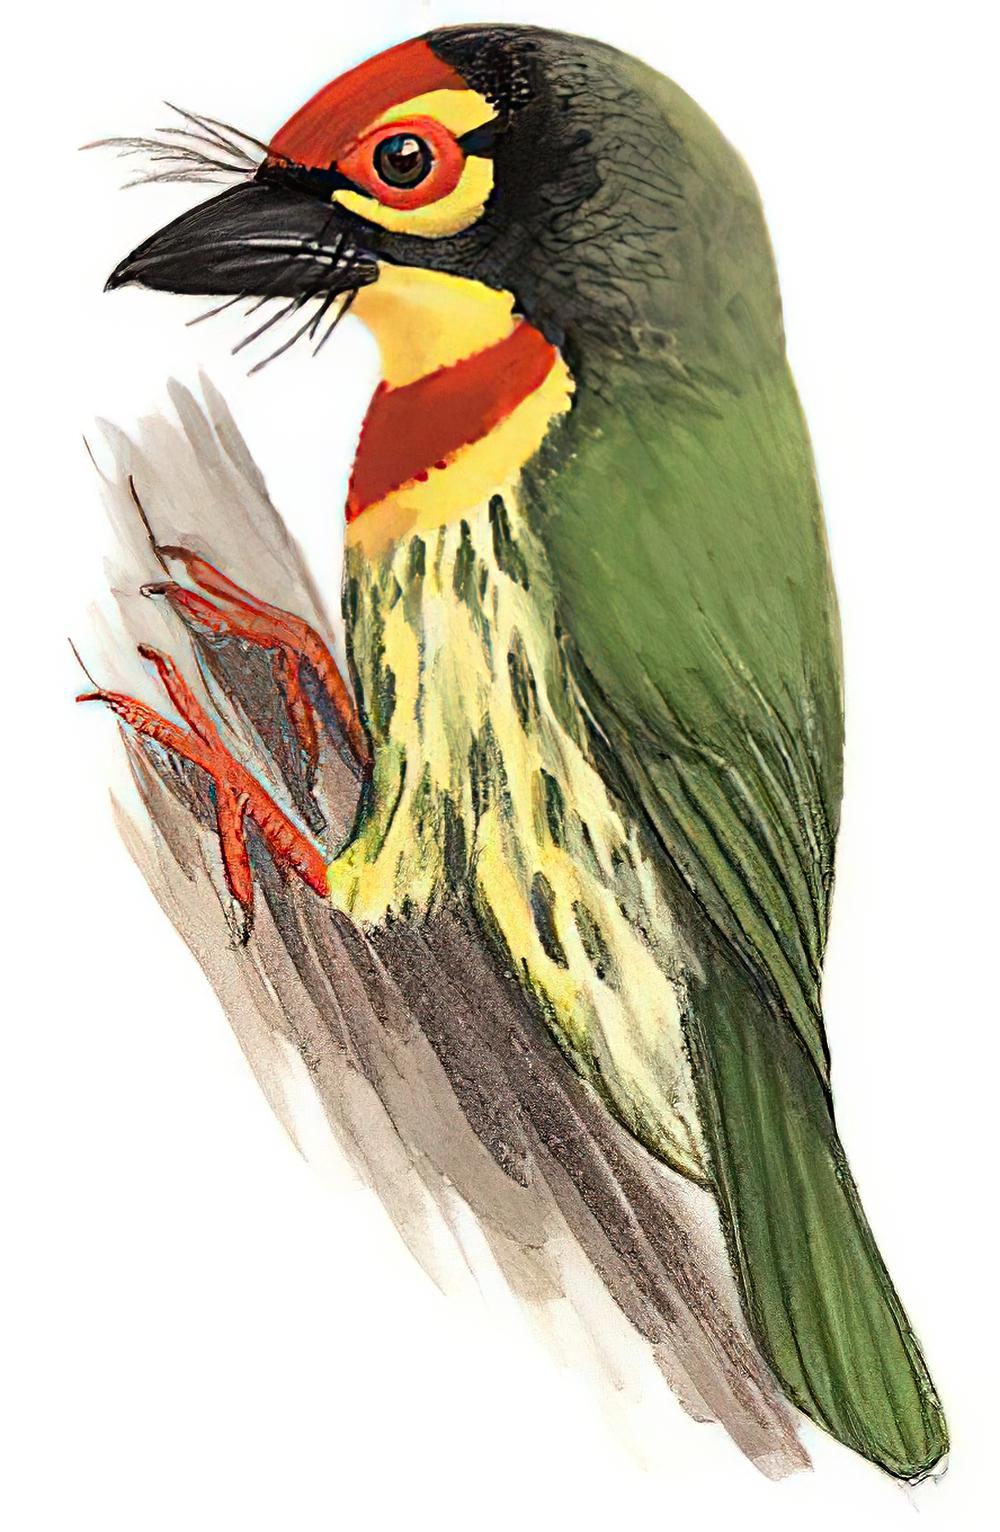 赤胸拟啄木鸟 / Coppersmith Barbet / Psilopogon haemacephalus